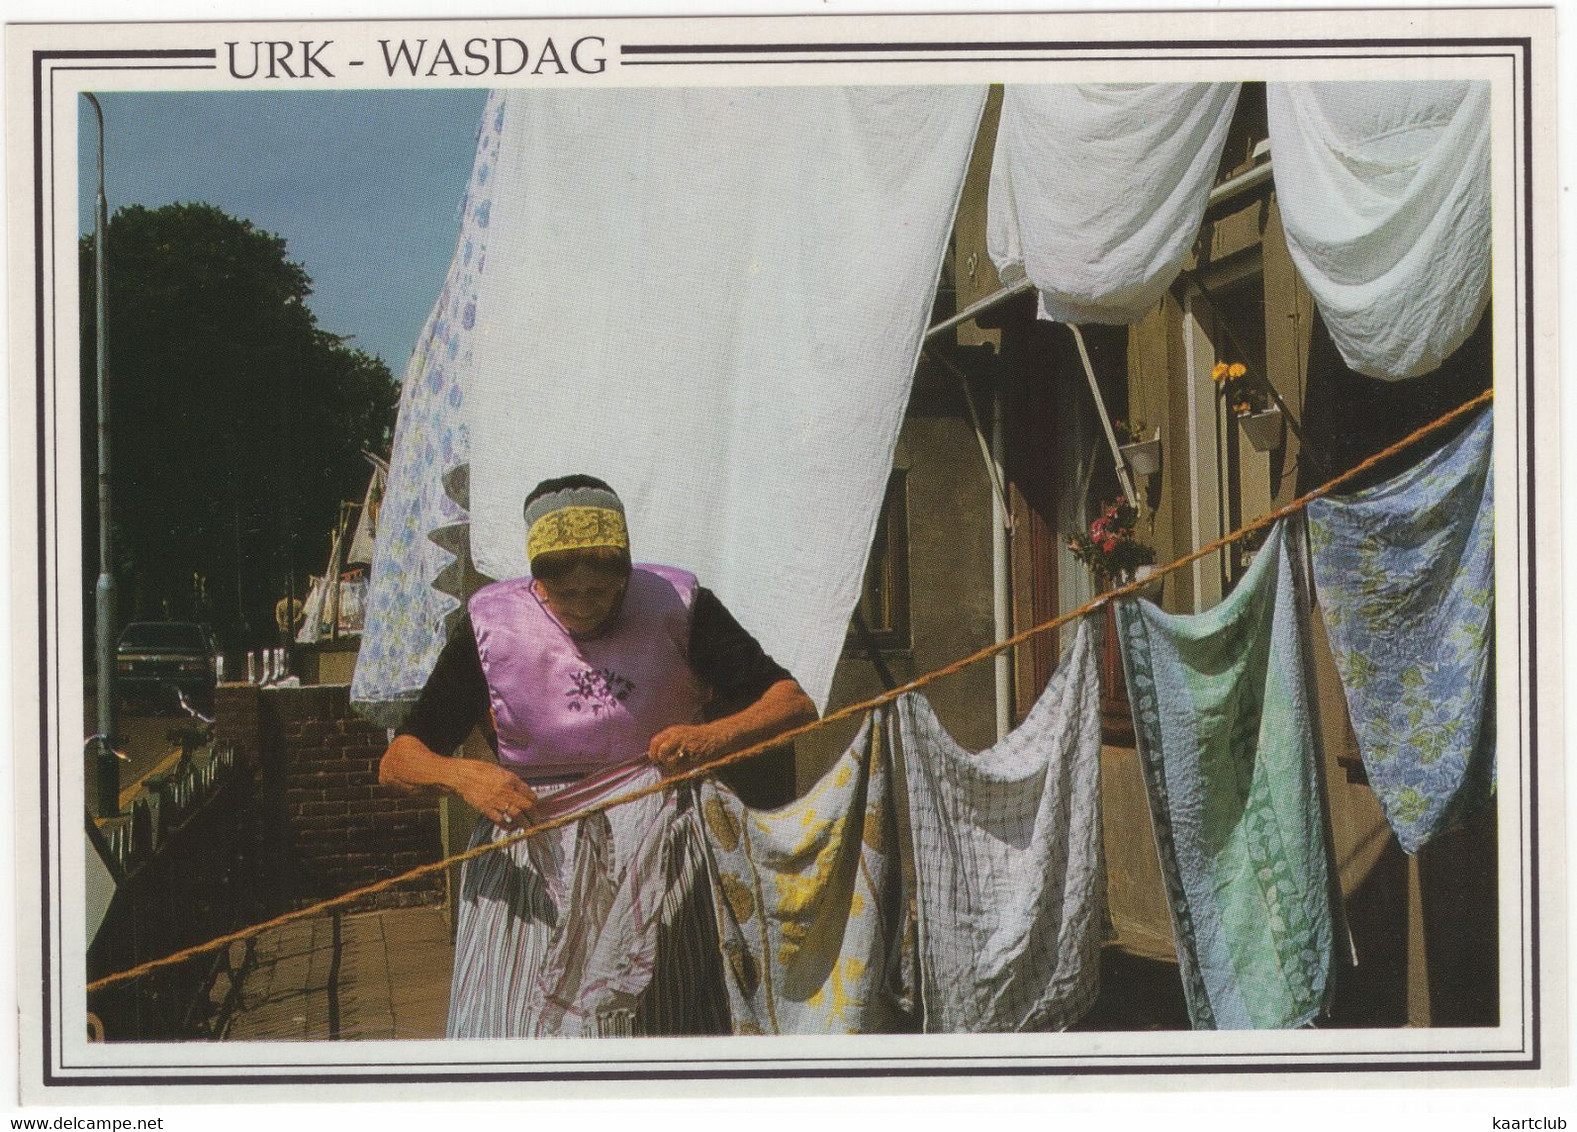 Urk - Wasdag - (Holland/Nederland) - Nr. URK 34 - Urk